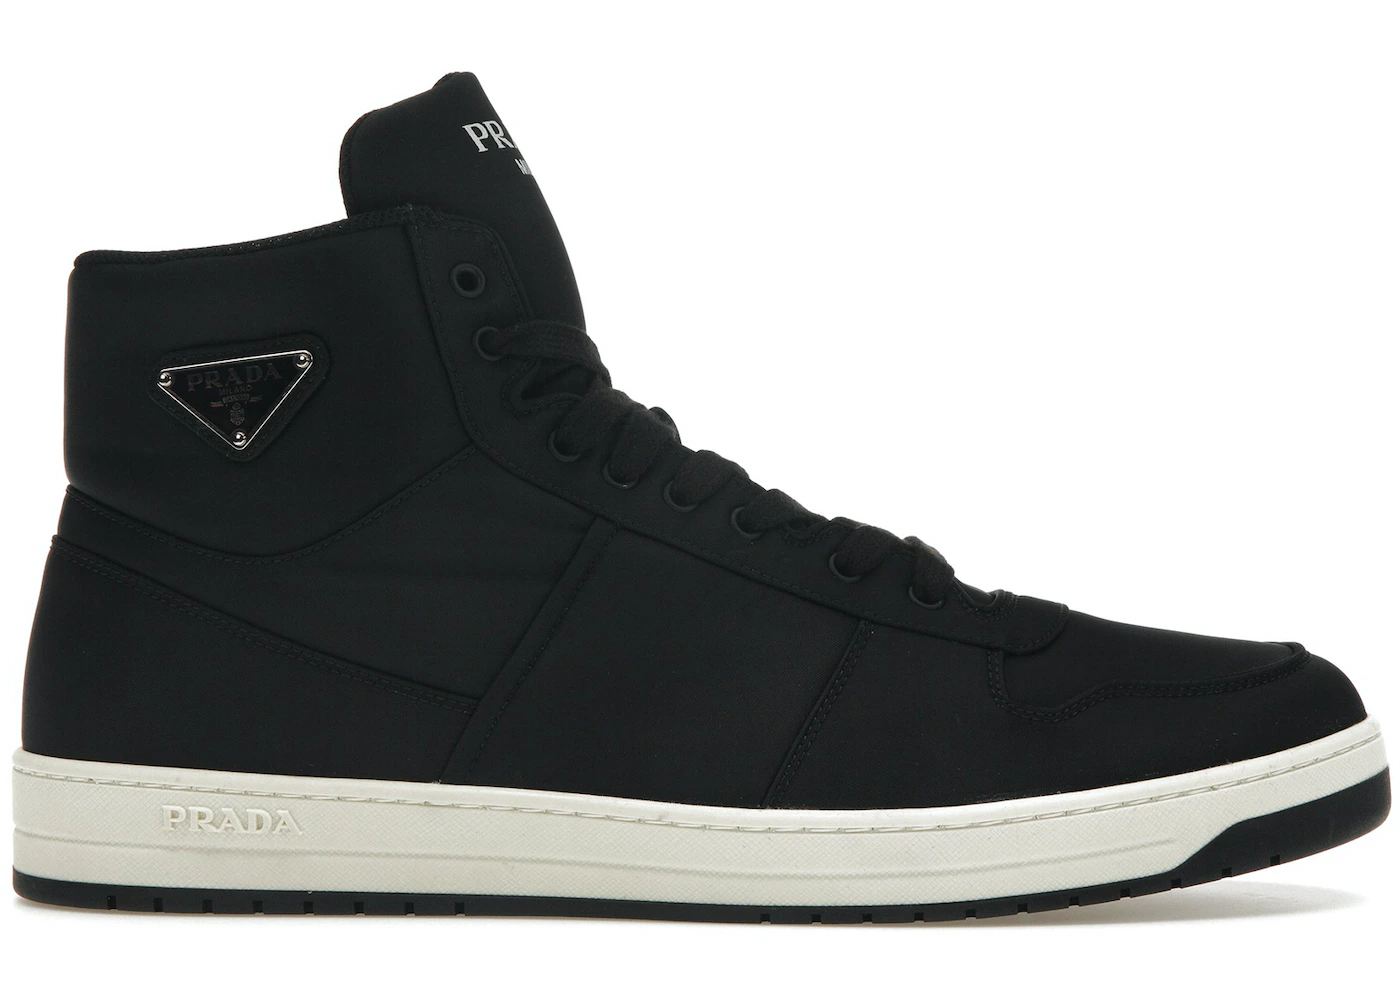 Prada Re-Nylon Gabardine High Top Sneakers Black Black White Men's ...